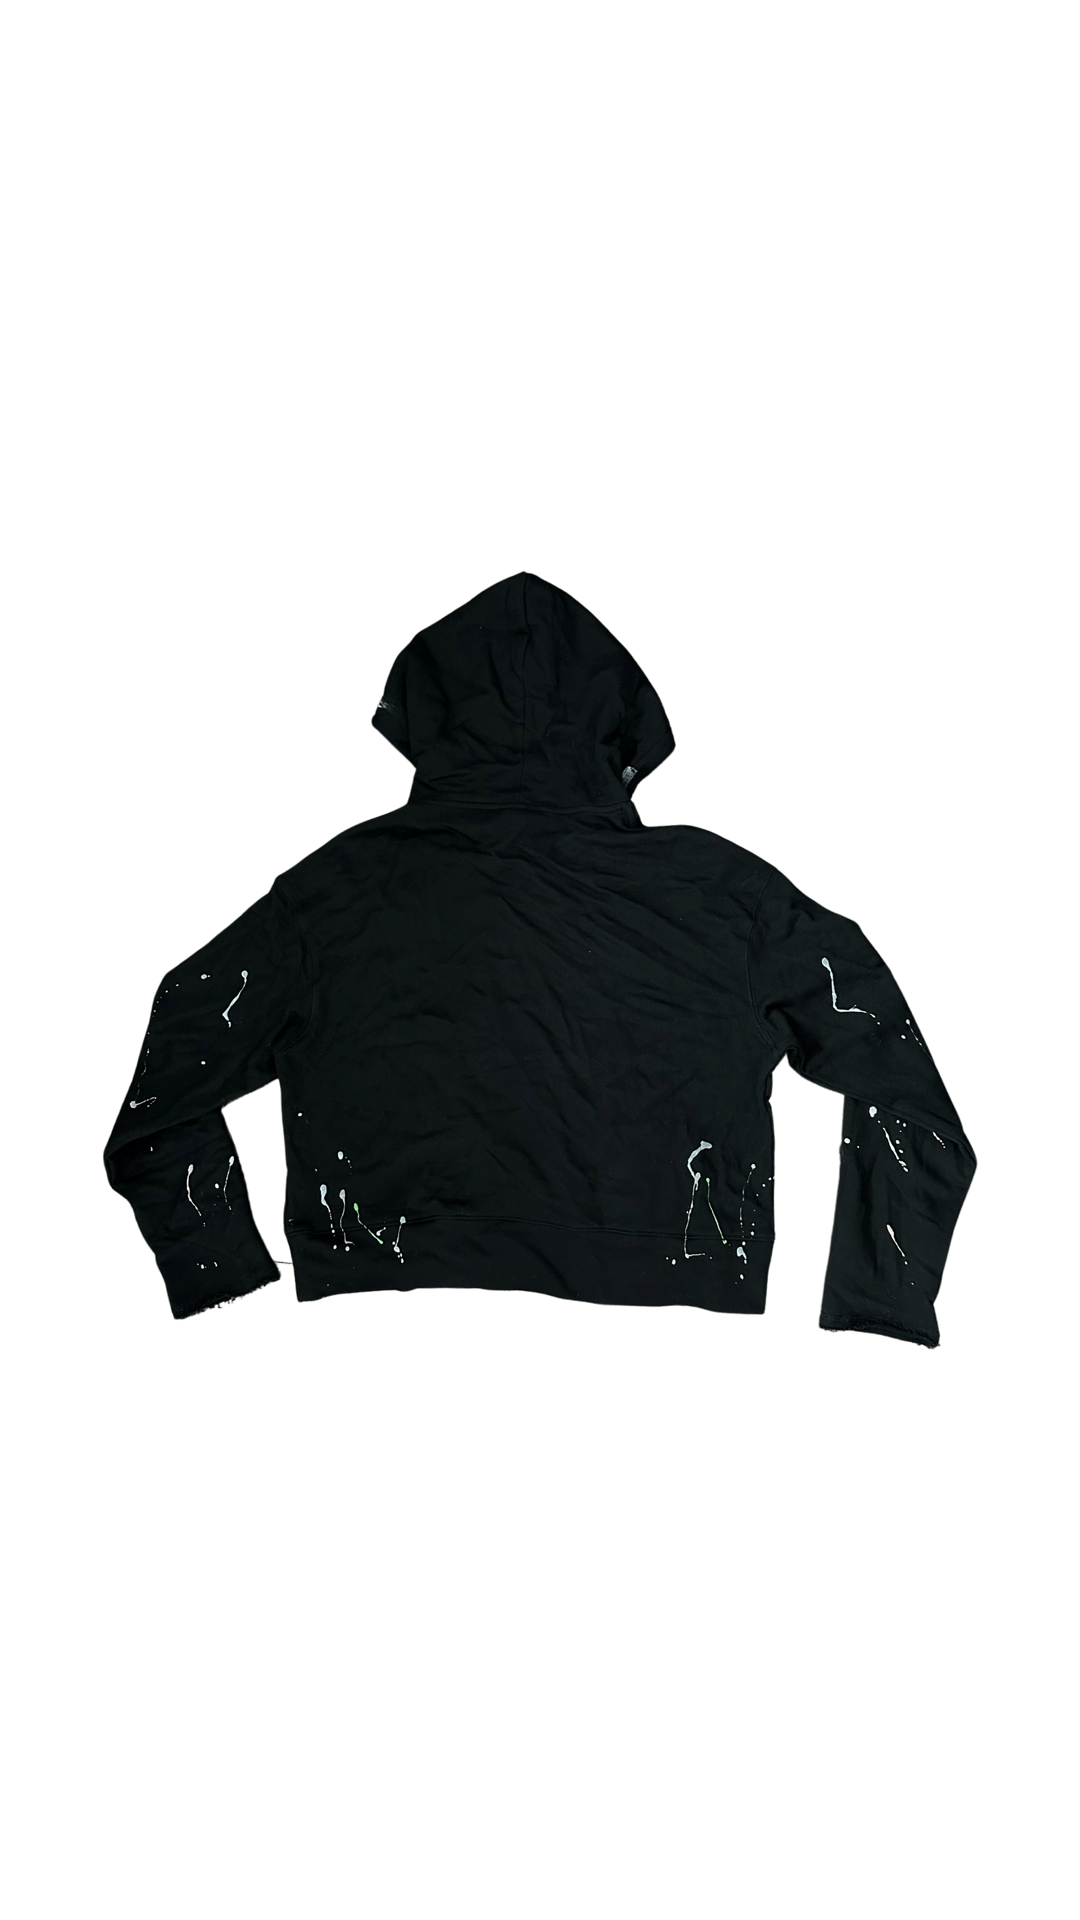 Art hoodie (black)